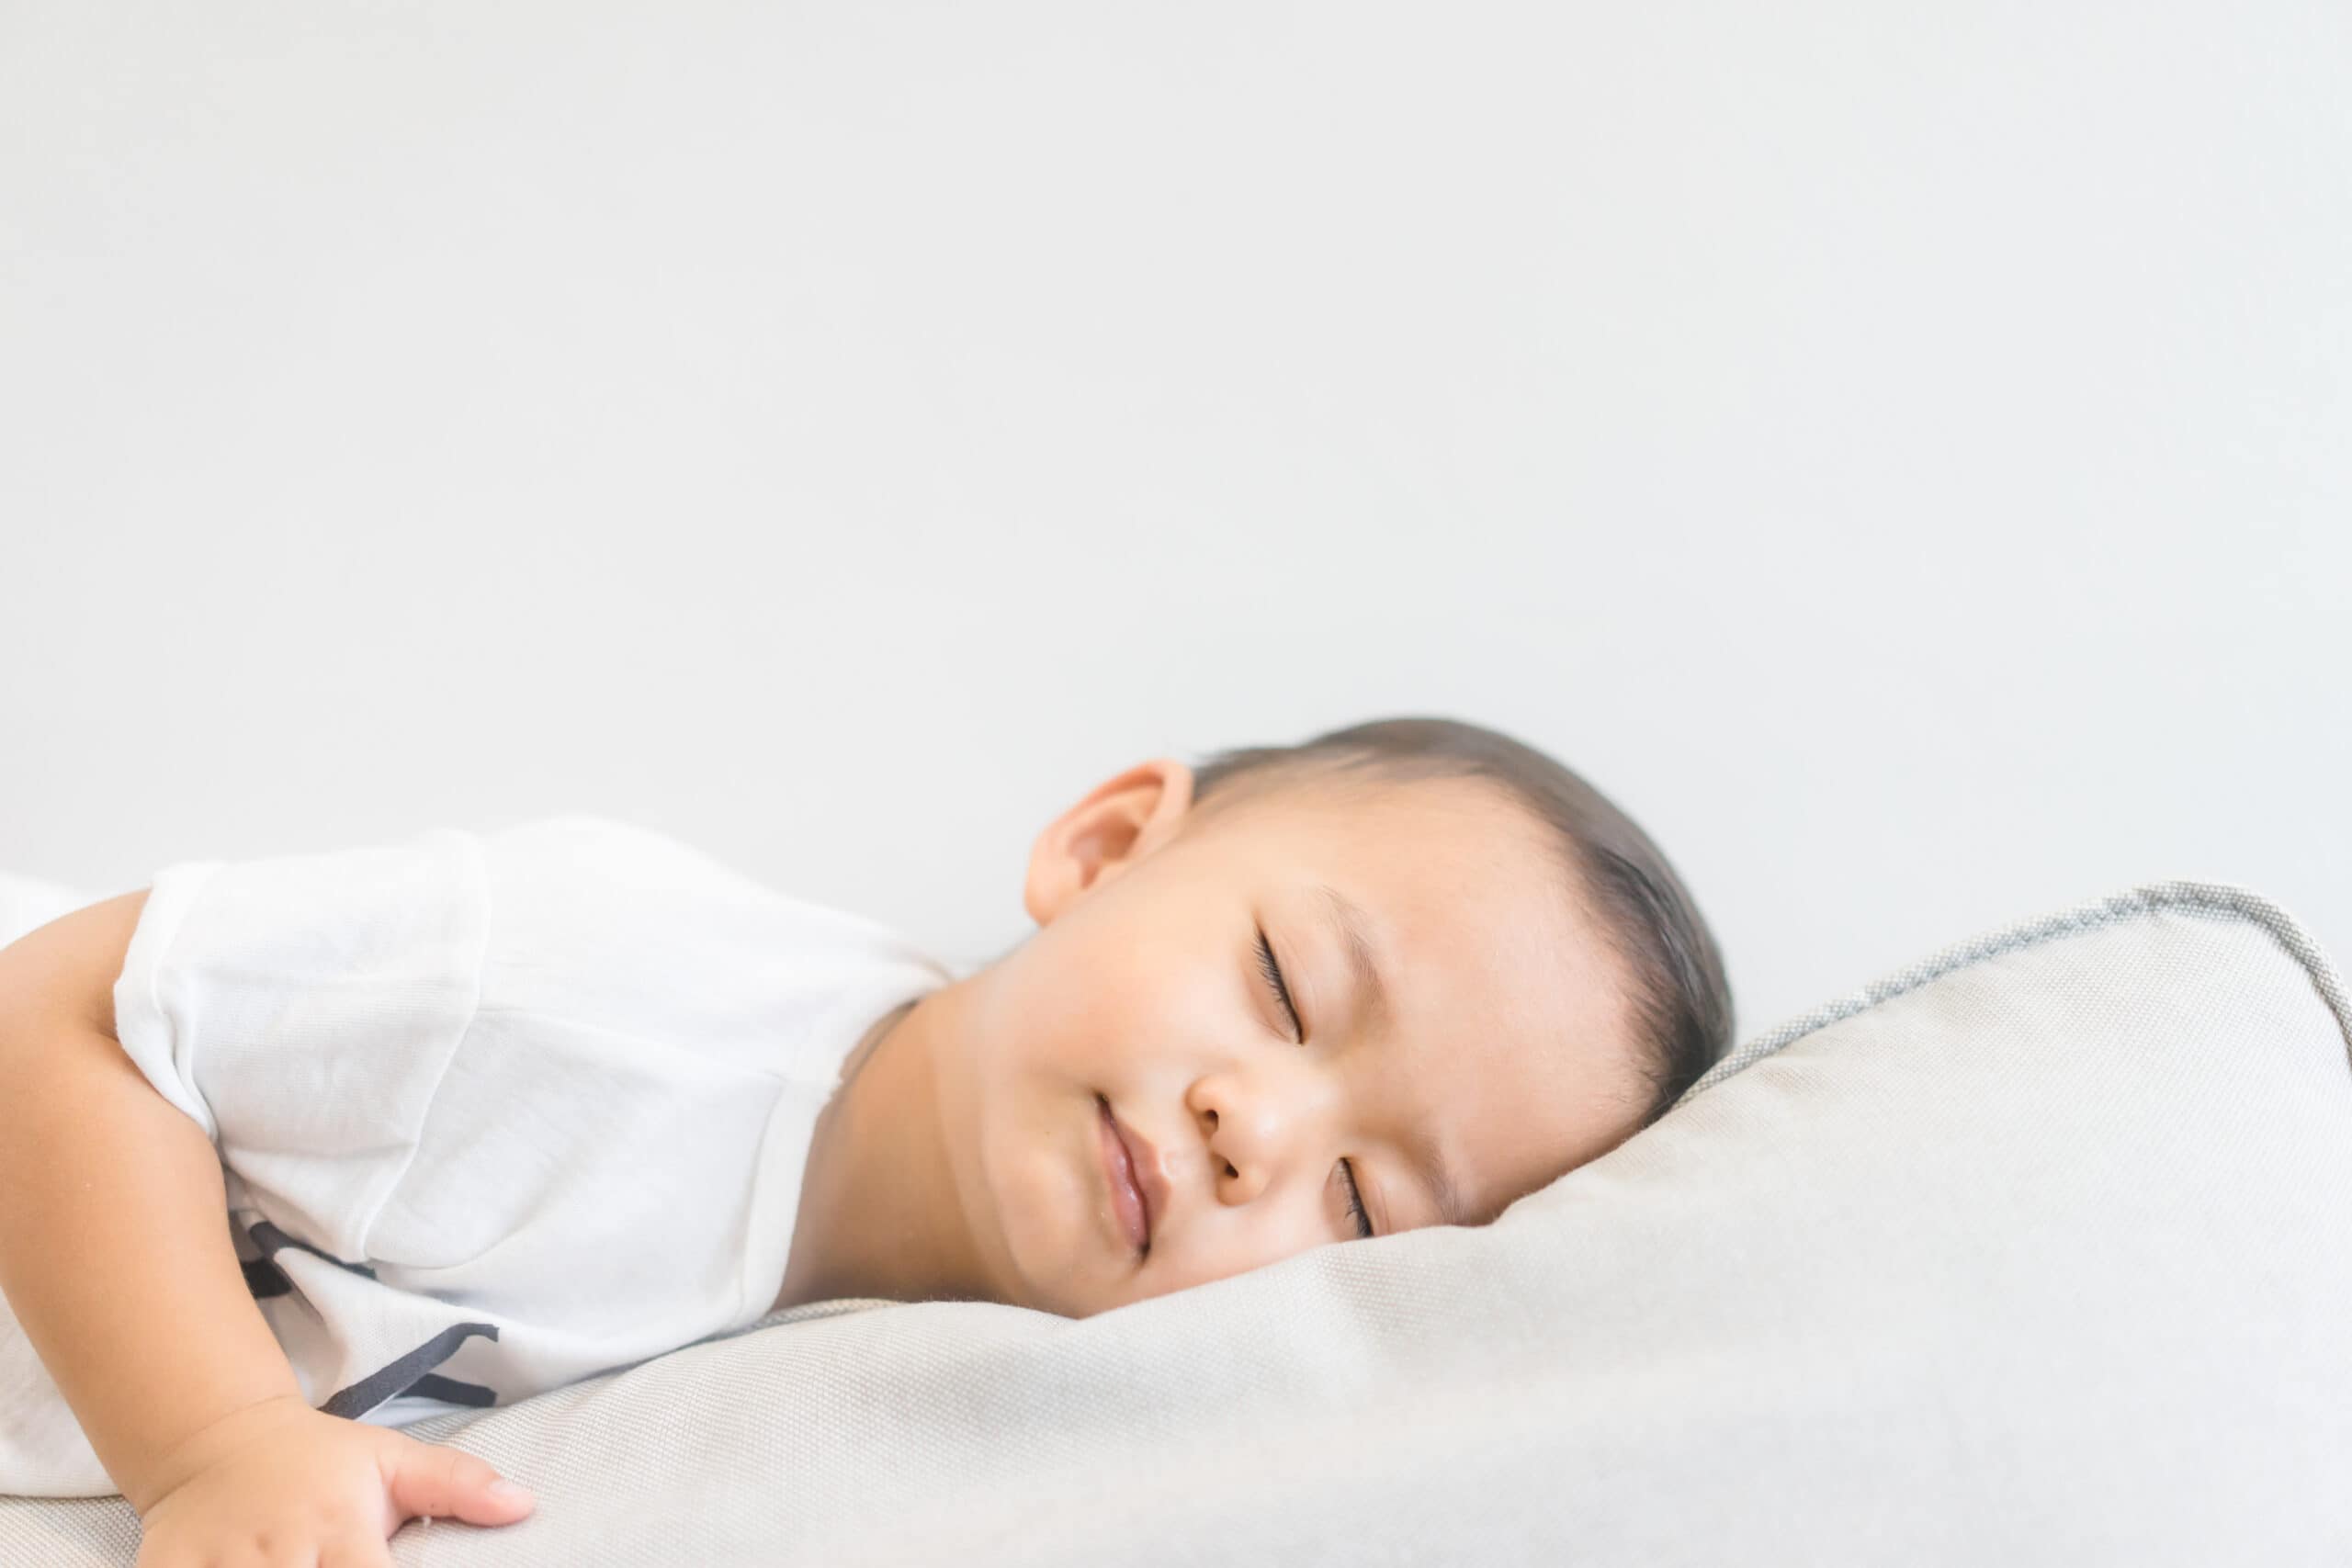 โกรทฮอร์โมน มีความสำคัญอย่างไร และการนอนมีส่งอย่างไรต่อโกรทฮอรโมน?